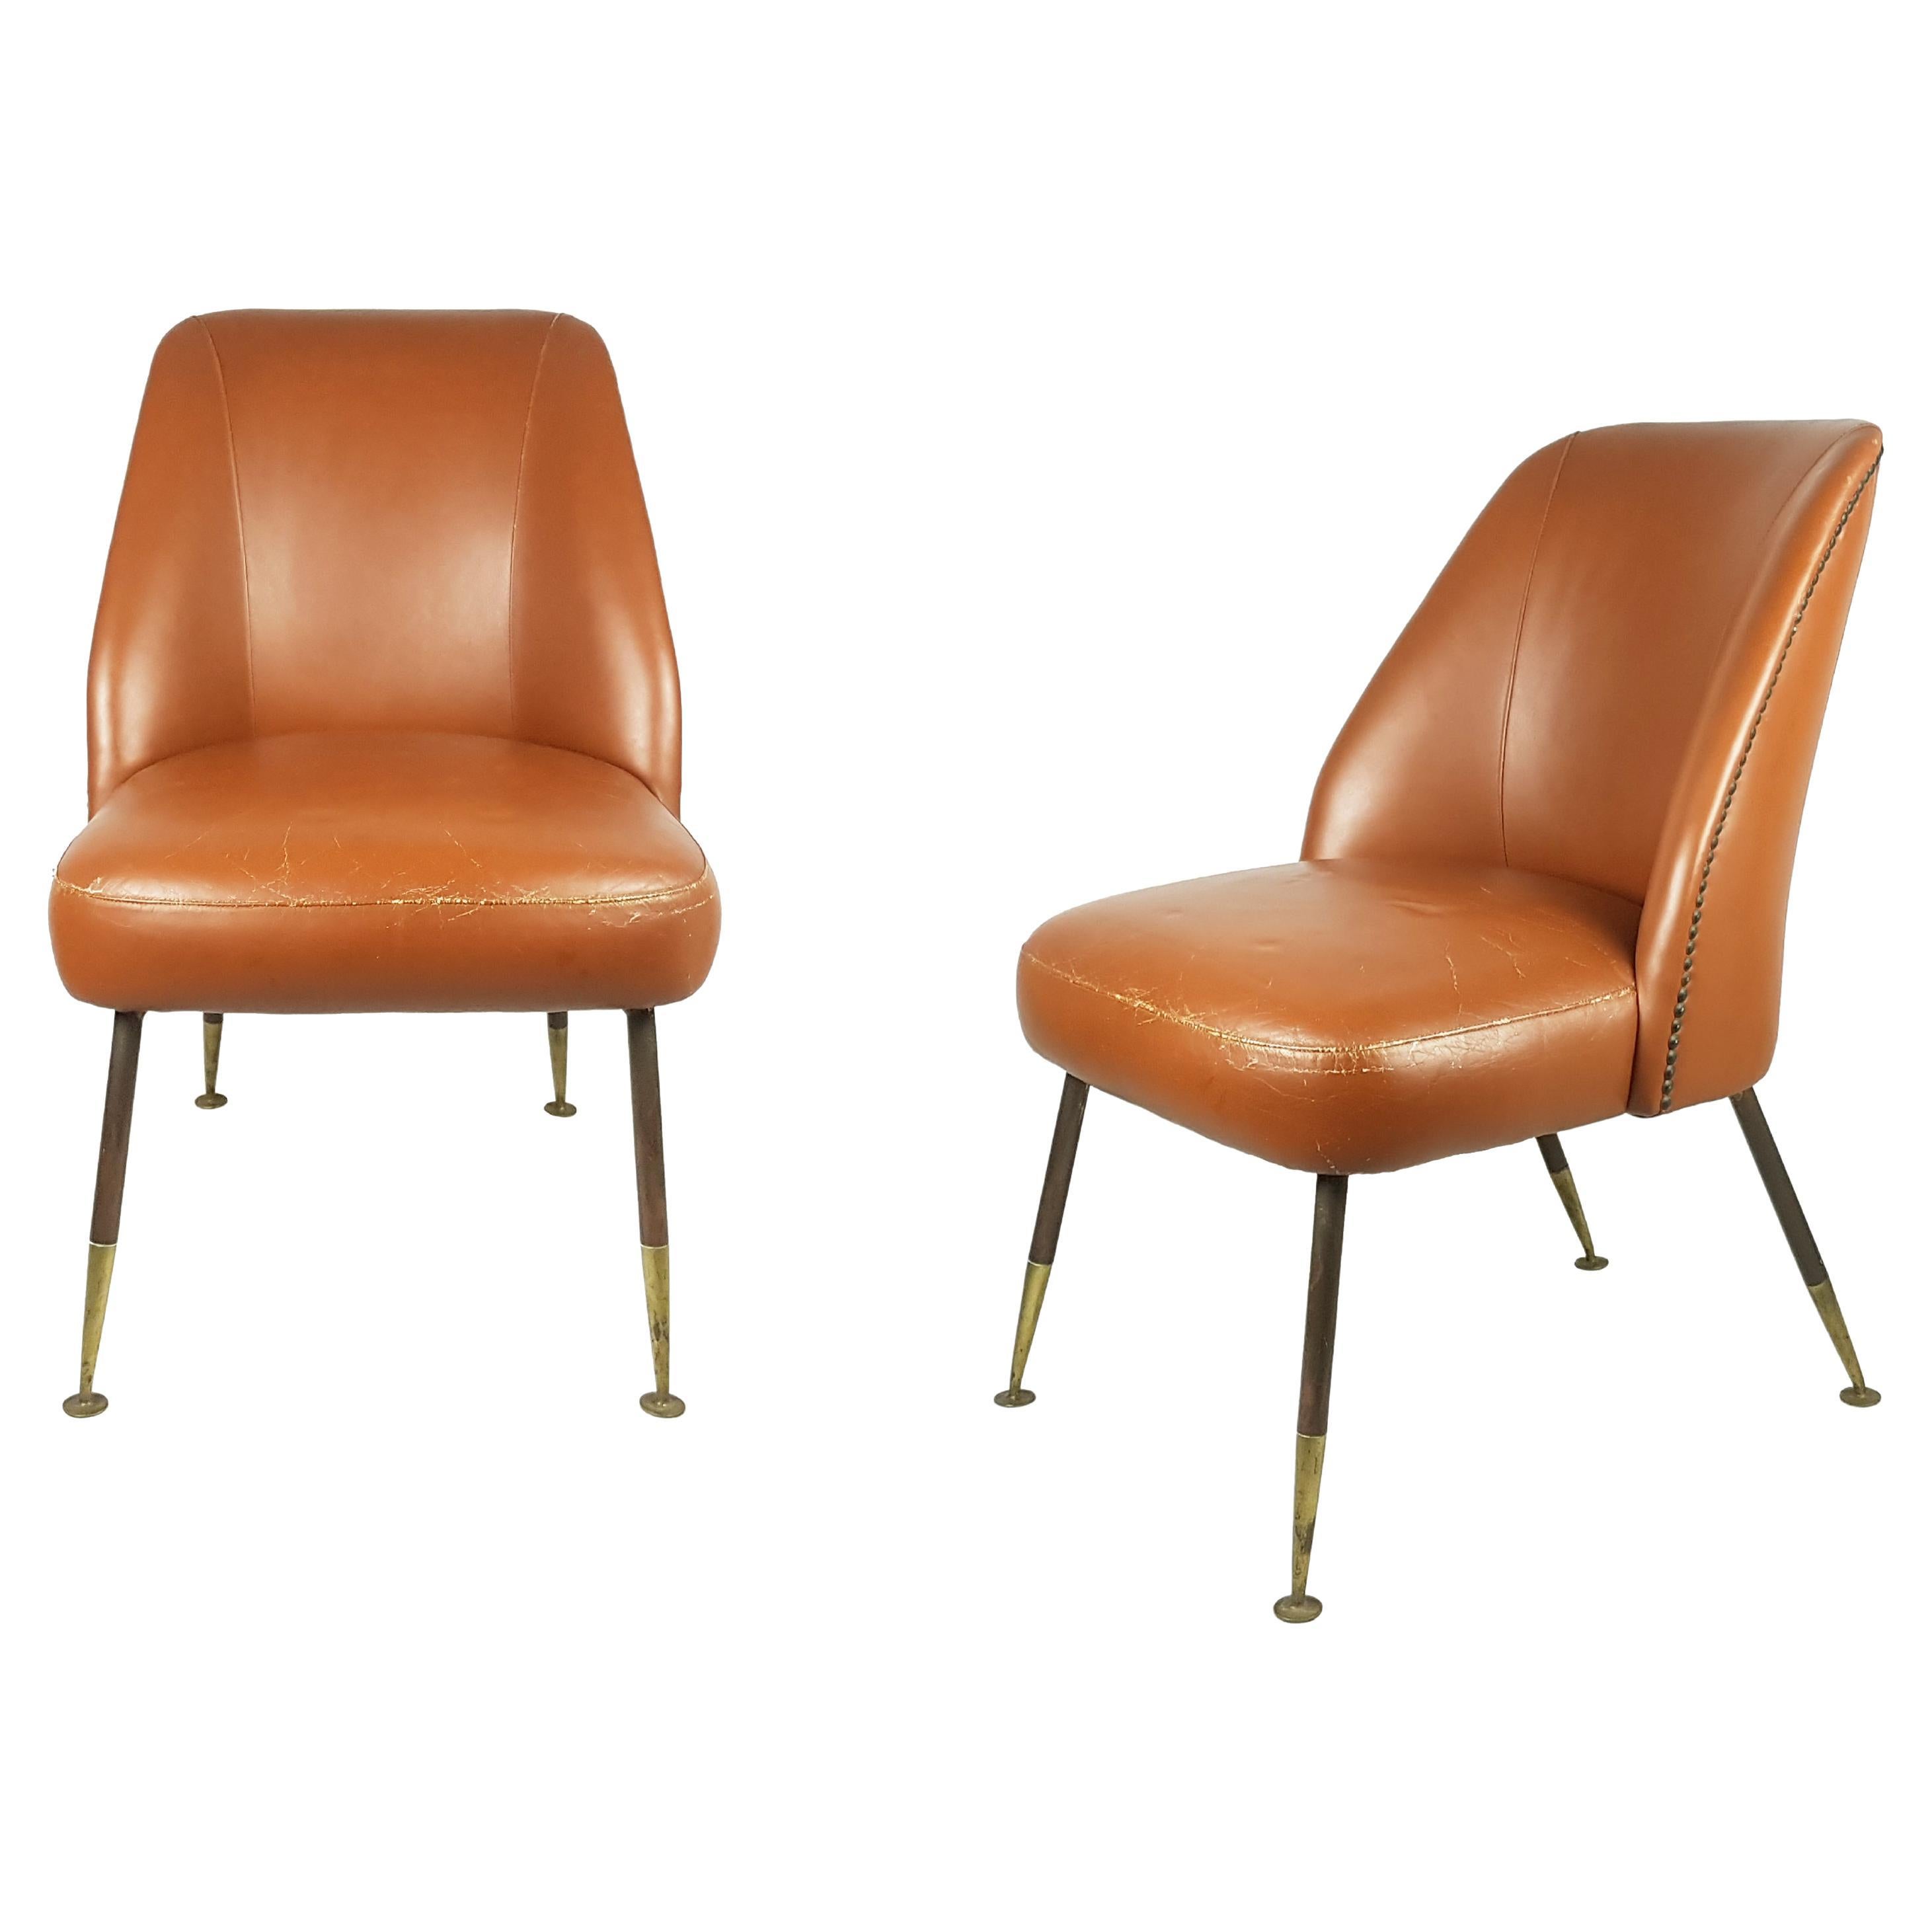 Stühle "Campanula" aus braunem Leder und Messing von C. Pagani für Arflex, 1952, 2 Exemplare